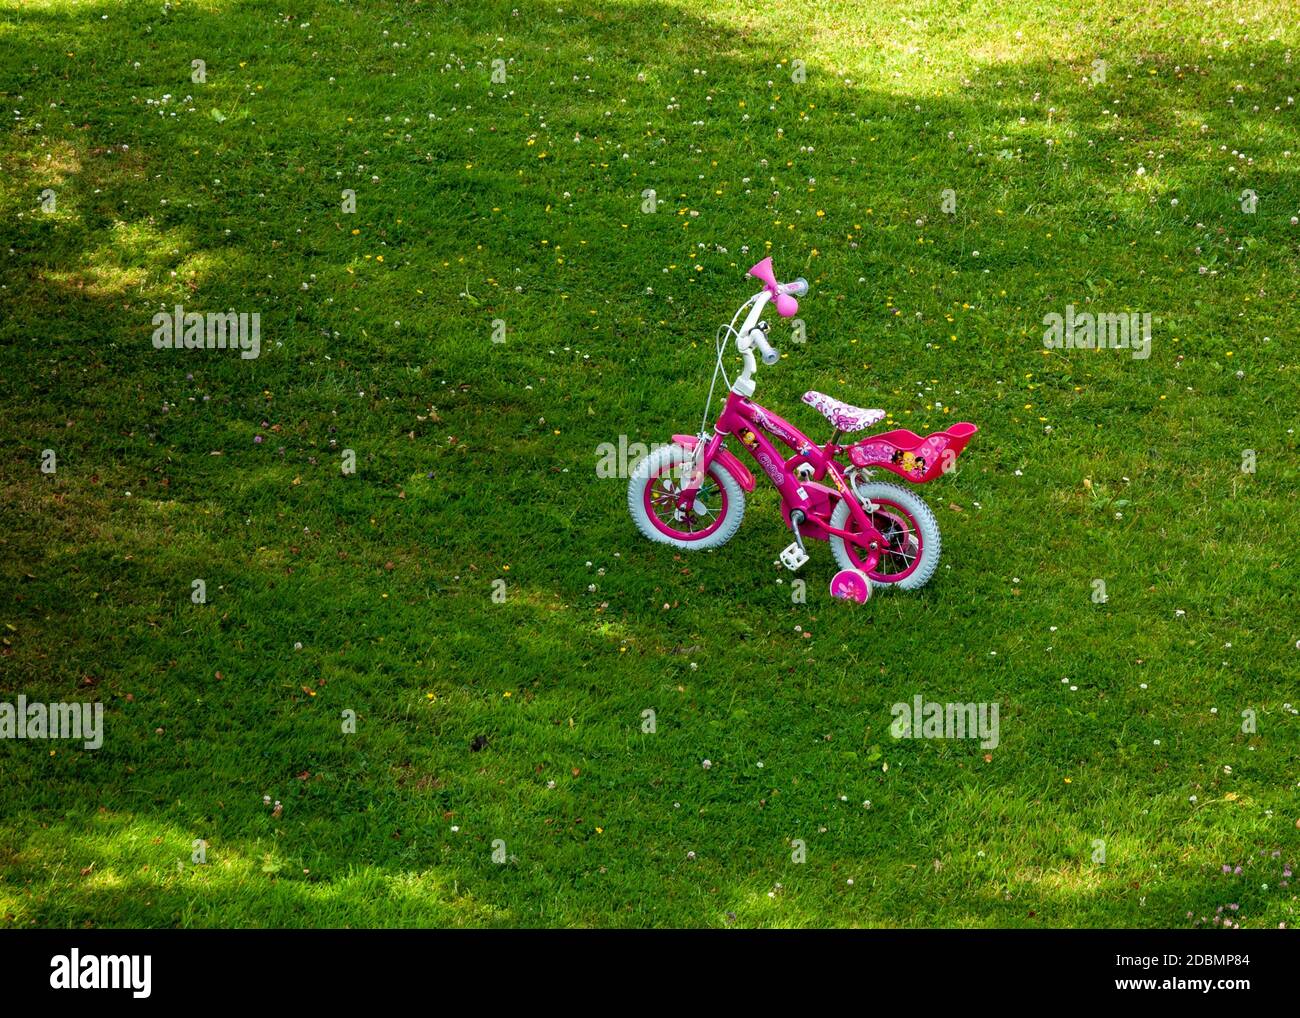 12 pollici rosa girl's pedalò bike con ruote di allenamento in ombra aperta sul cortile verde prato Foto Stock